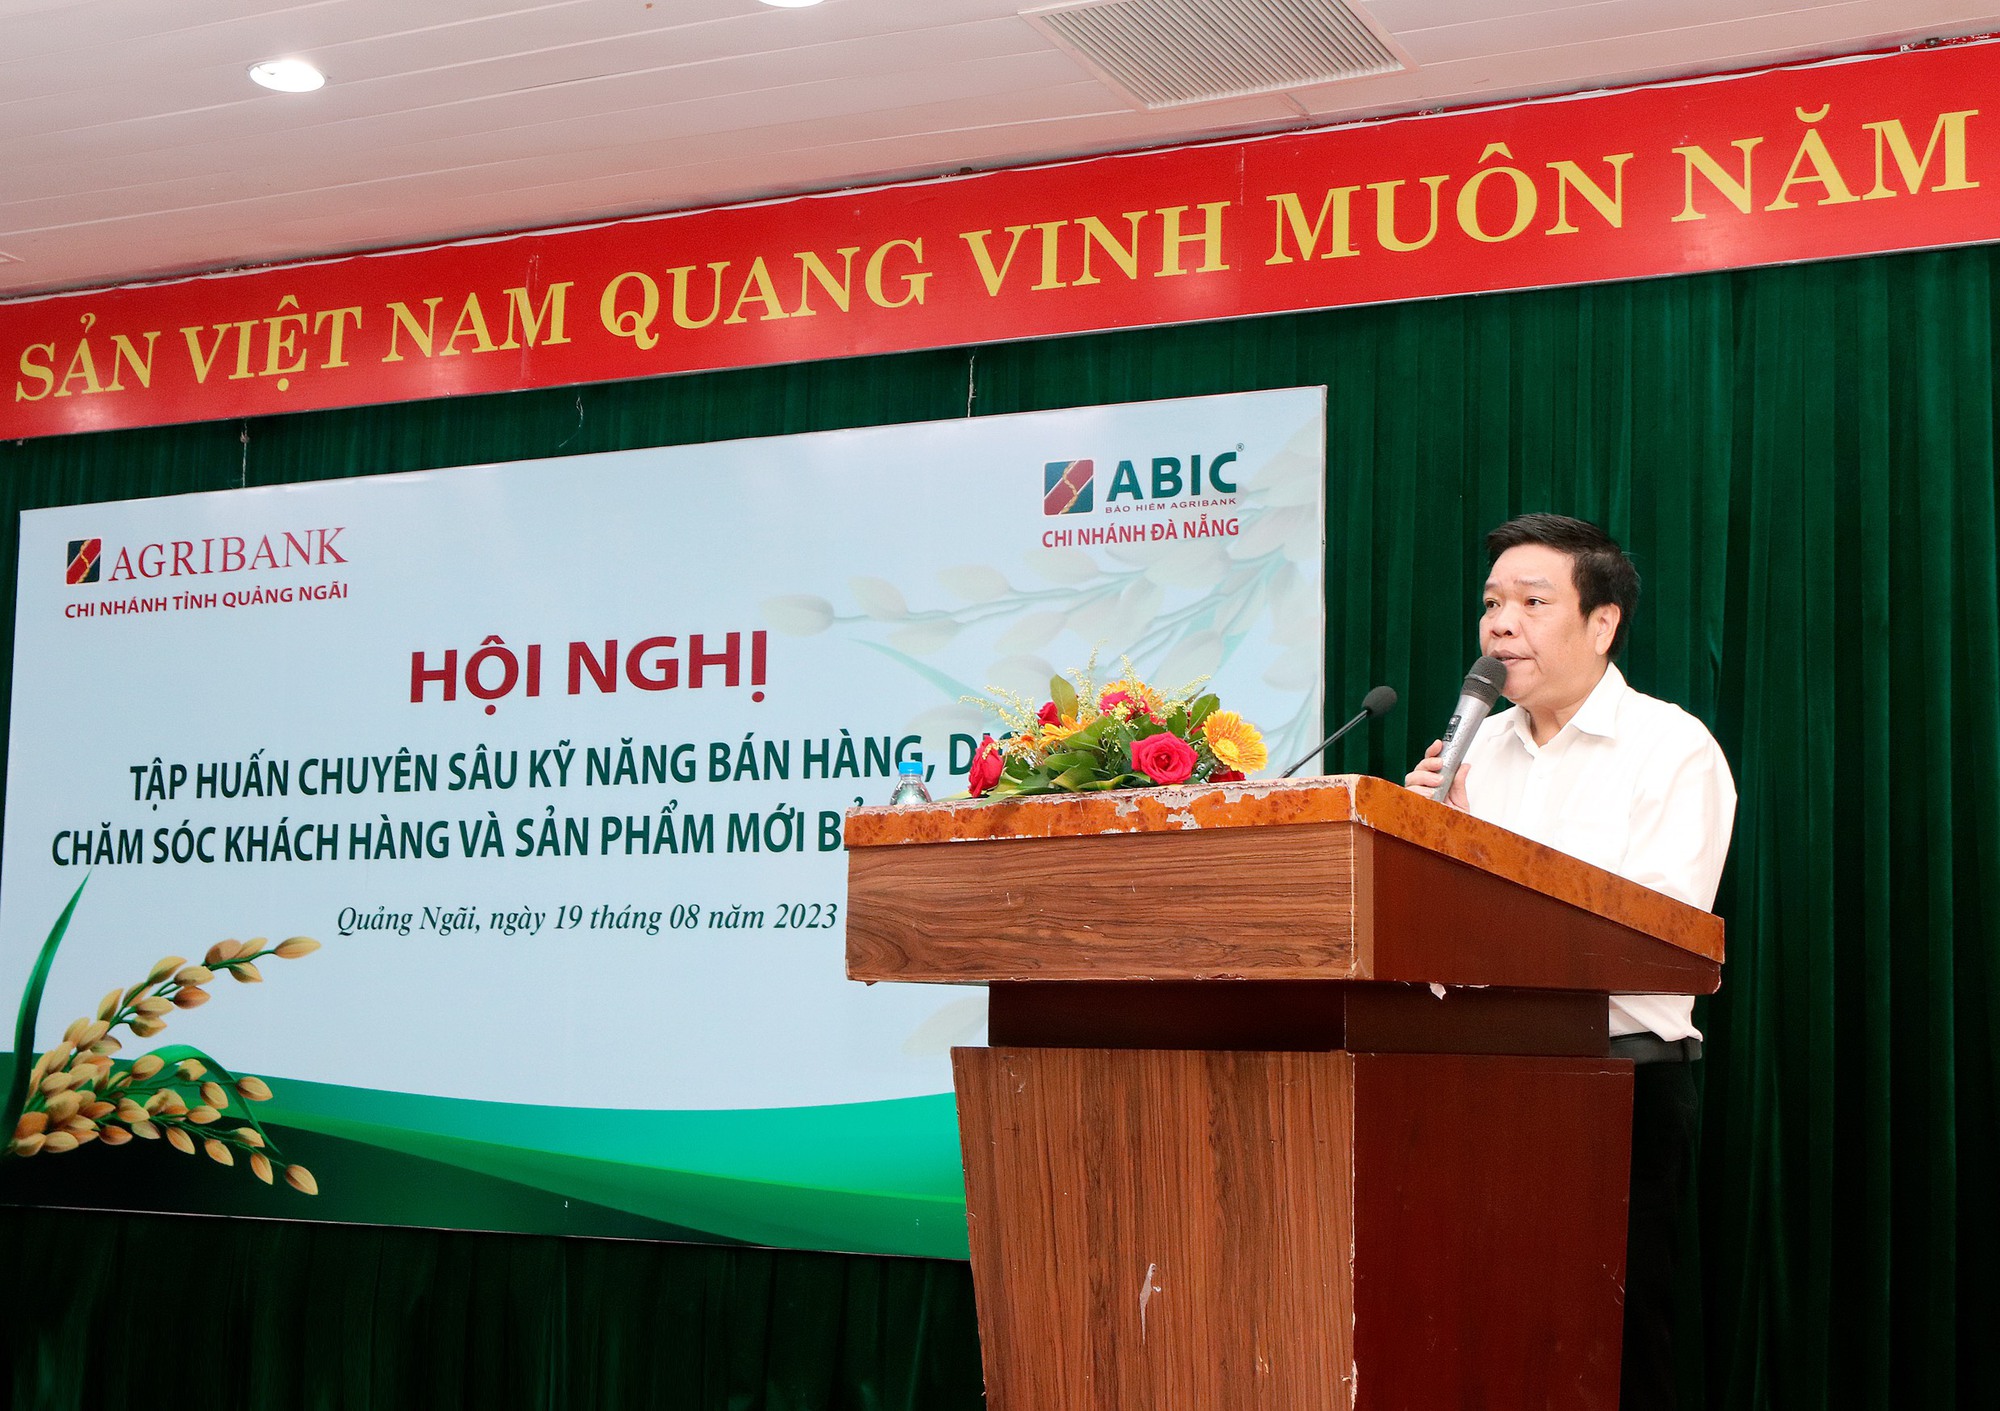 Bảo hiểm Agribank Đà Nẵng tổ chức hội nghị nâng cao kỹ năng, nghiệp vụ chăm sóc khách hàng - Ảnh 1.